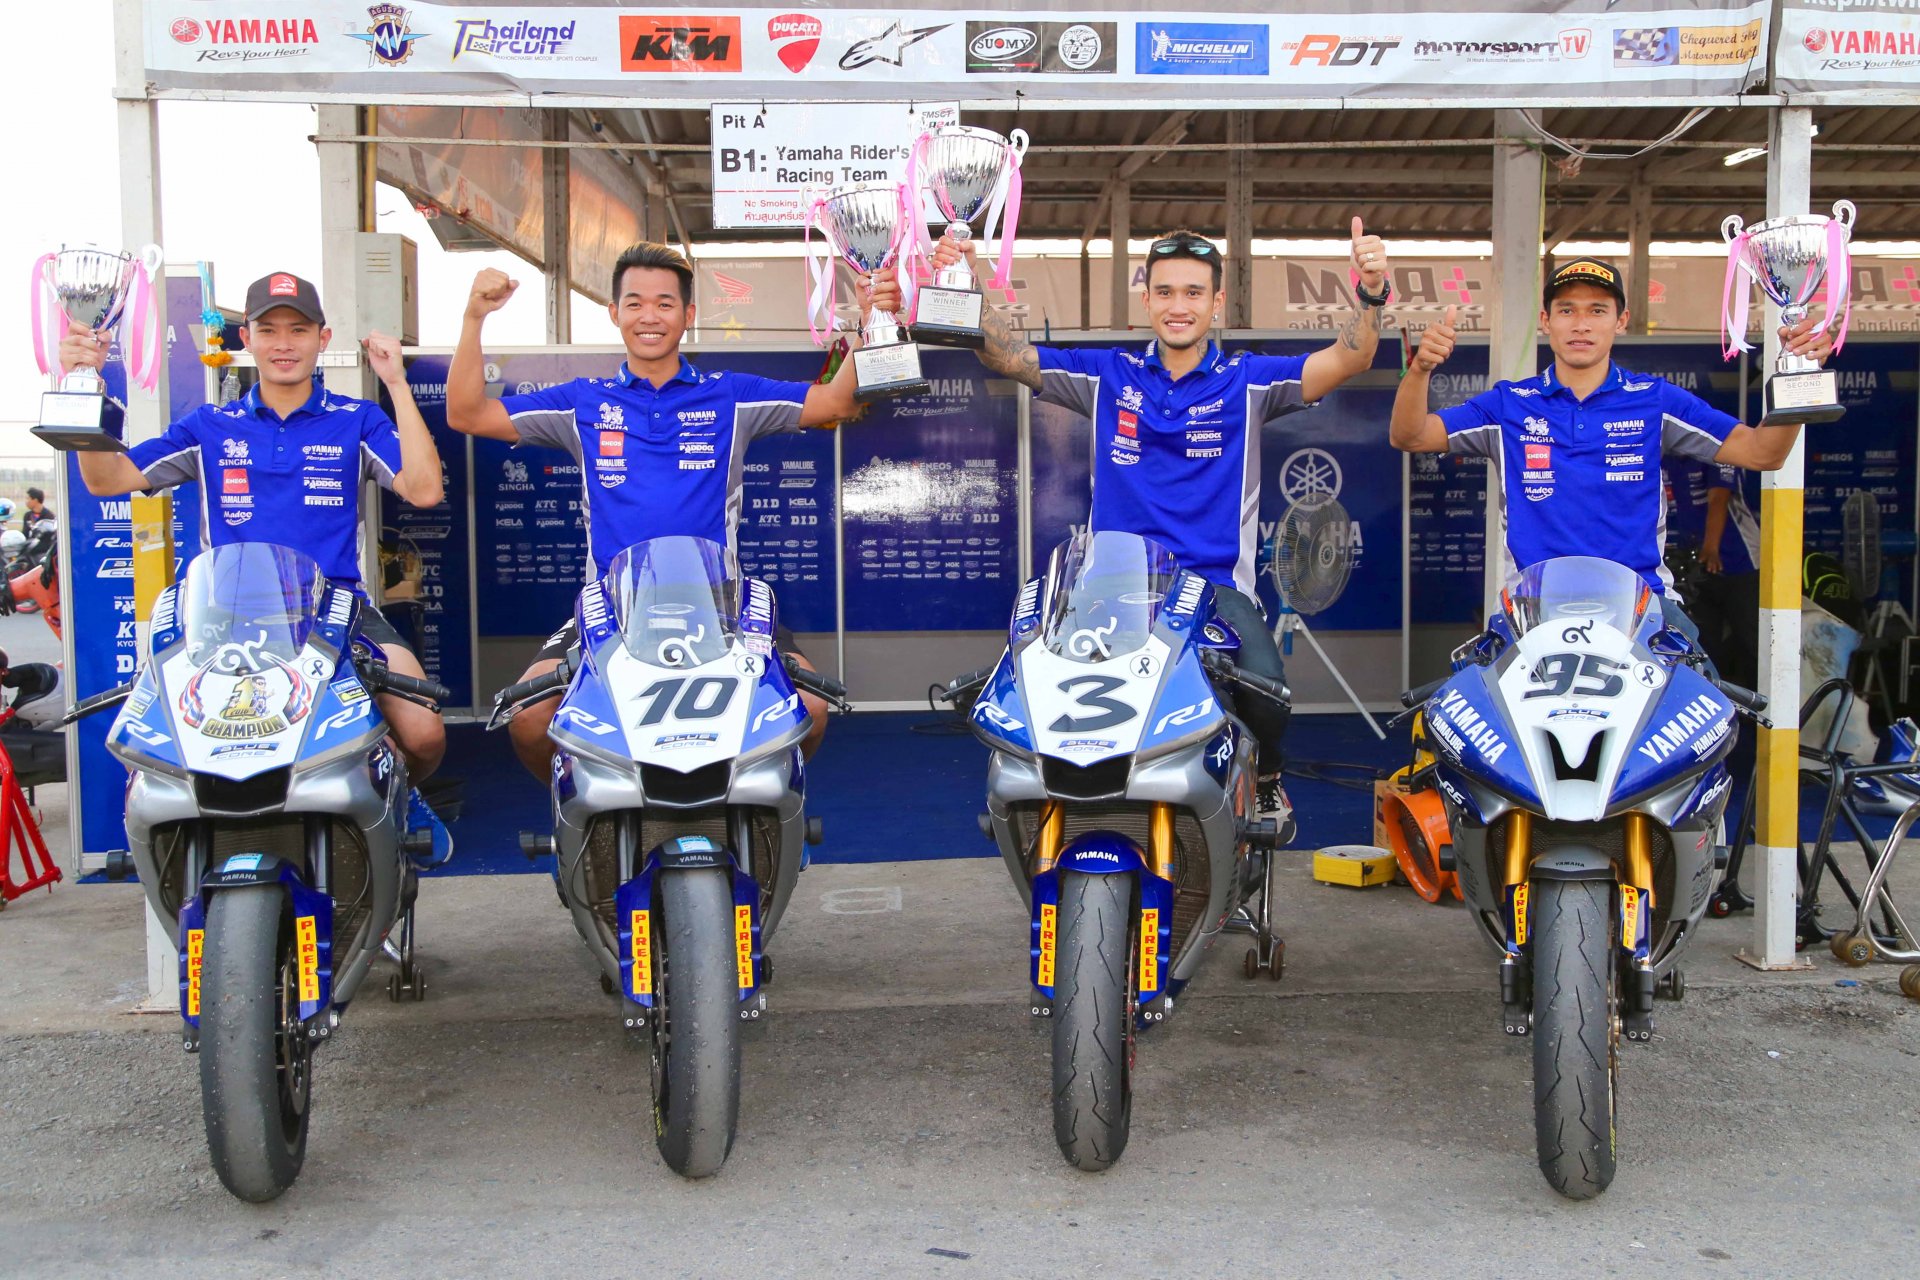 ทัพนักบิดสังกัด YAMAHA RIDERS’ CLUB RACING TEAM กวาดแชมป์ประเทศไทย 